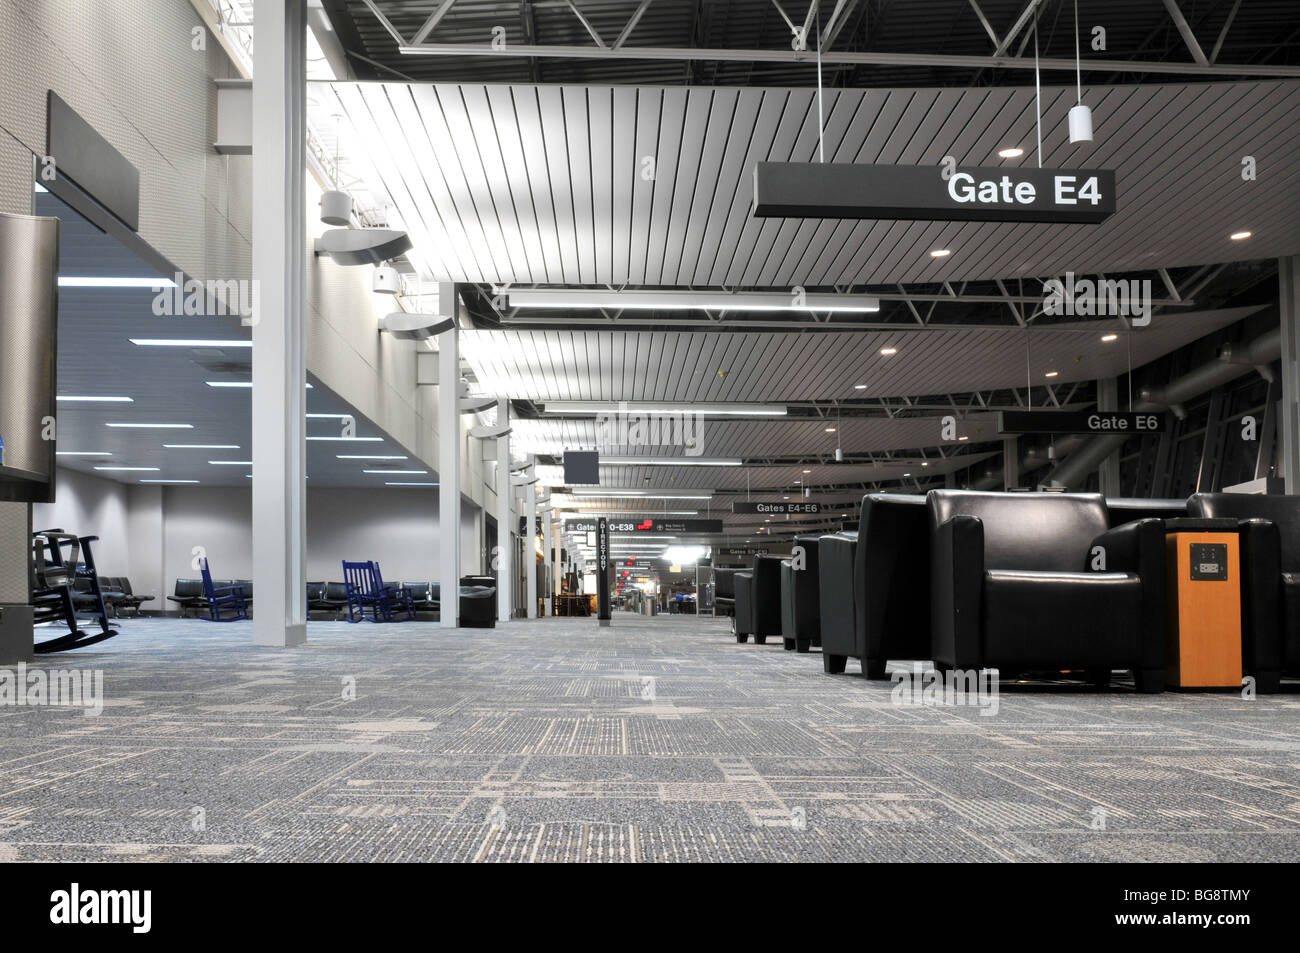 Flughafen terminal Innenraum ohne Personen zeigt die verschiedenen Tore-Informationen Stockfoto